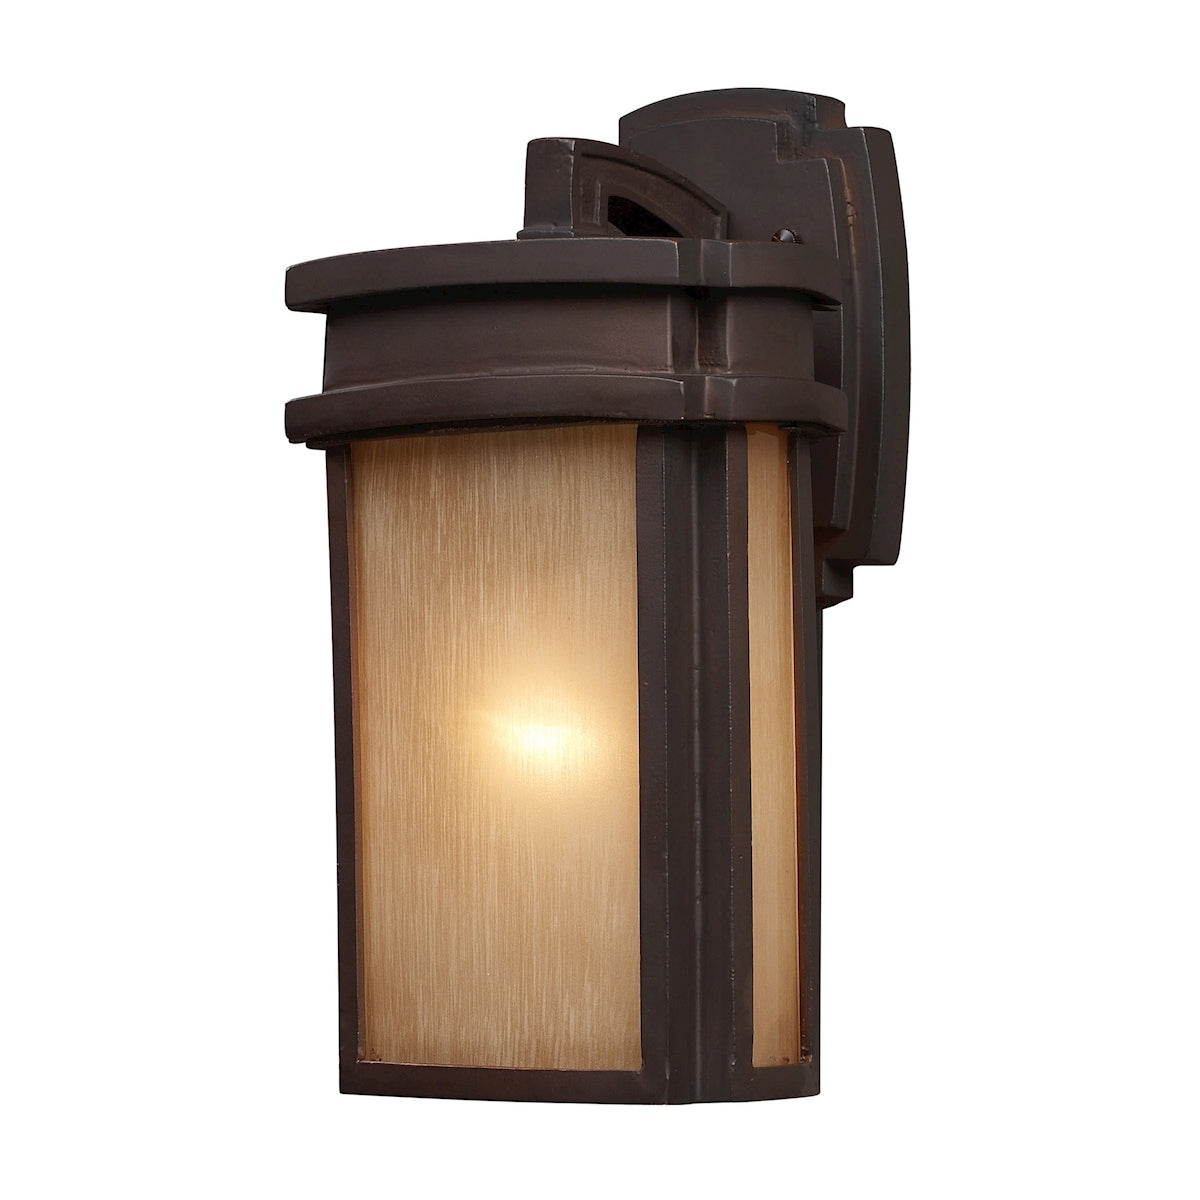 ELK Lighting 42140/1 Sedona 1-Light Outdoor Wall Lamp in Clay Bronze